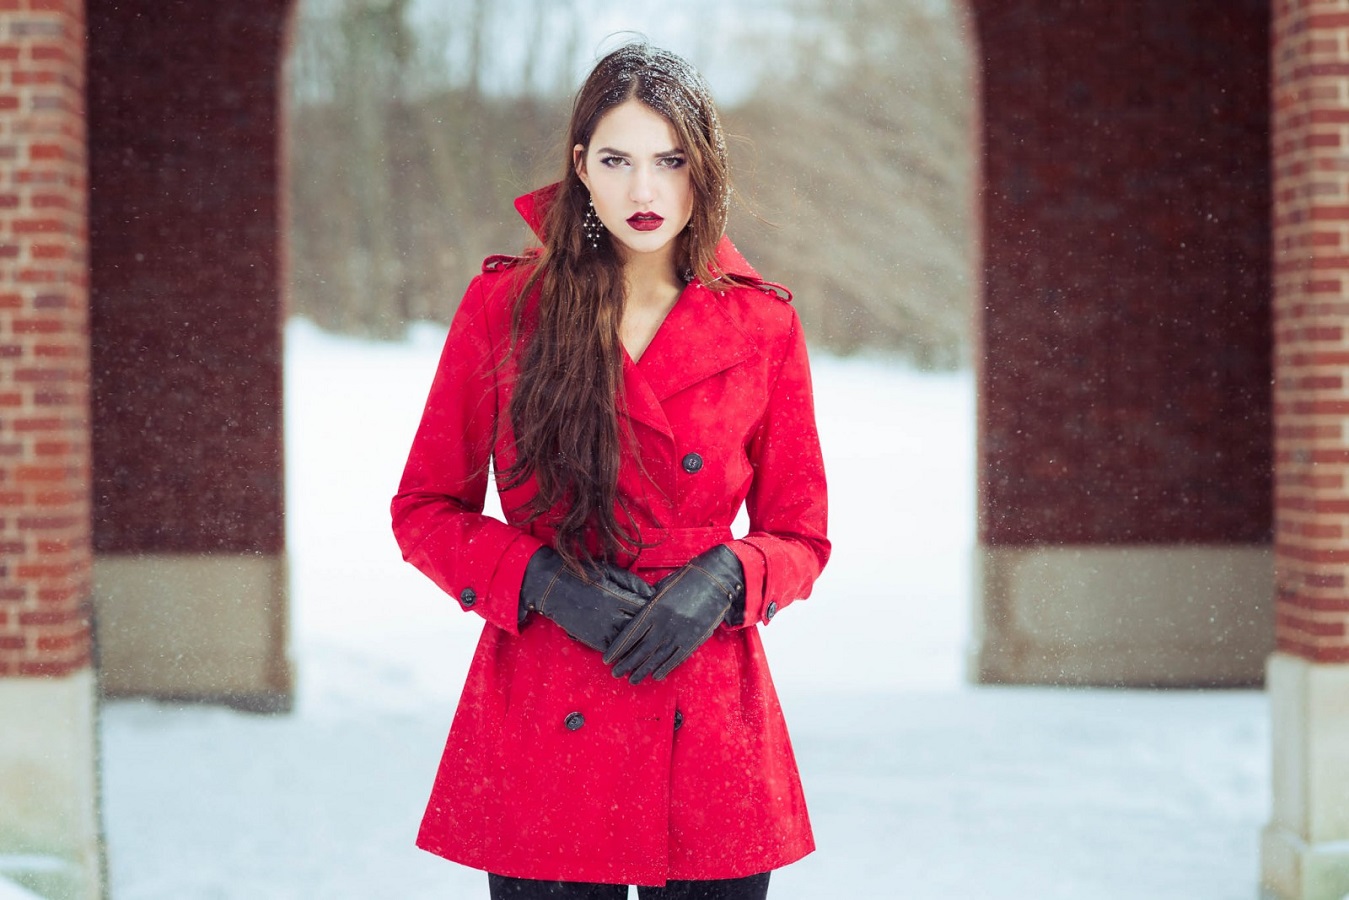 Women Model Long Hair Red Coat Coats Trench Coat Gloves Brunette Black Gloves Standing Red Lipstick  1349x900